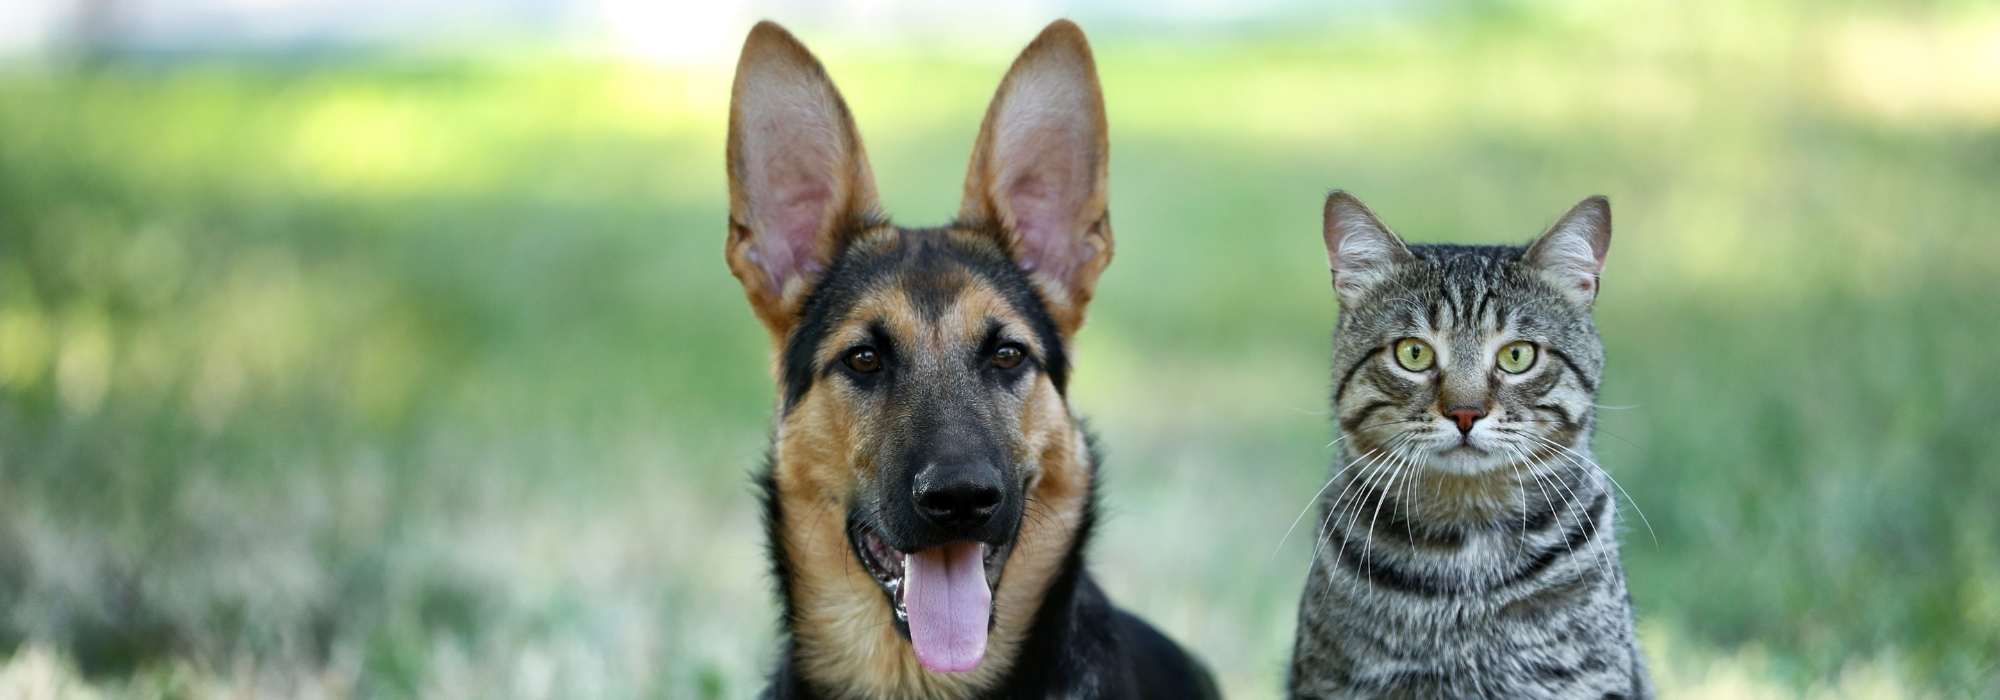 Praxis für klassische Tierhomöopathie und Verhaltenstherapie (Hund & Katze)